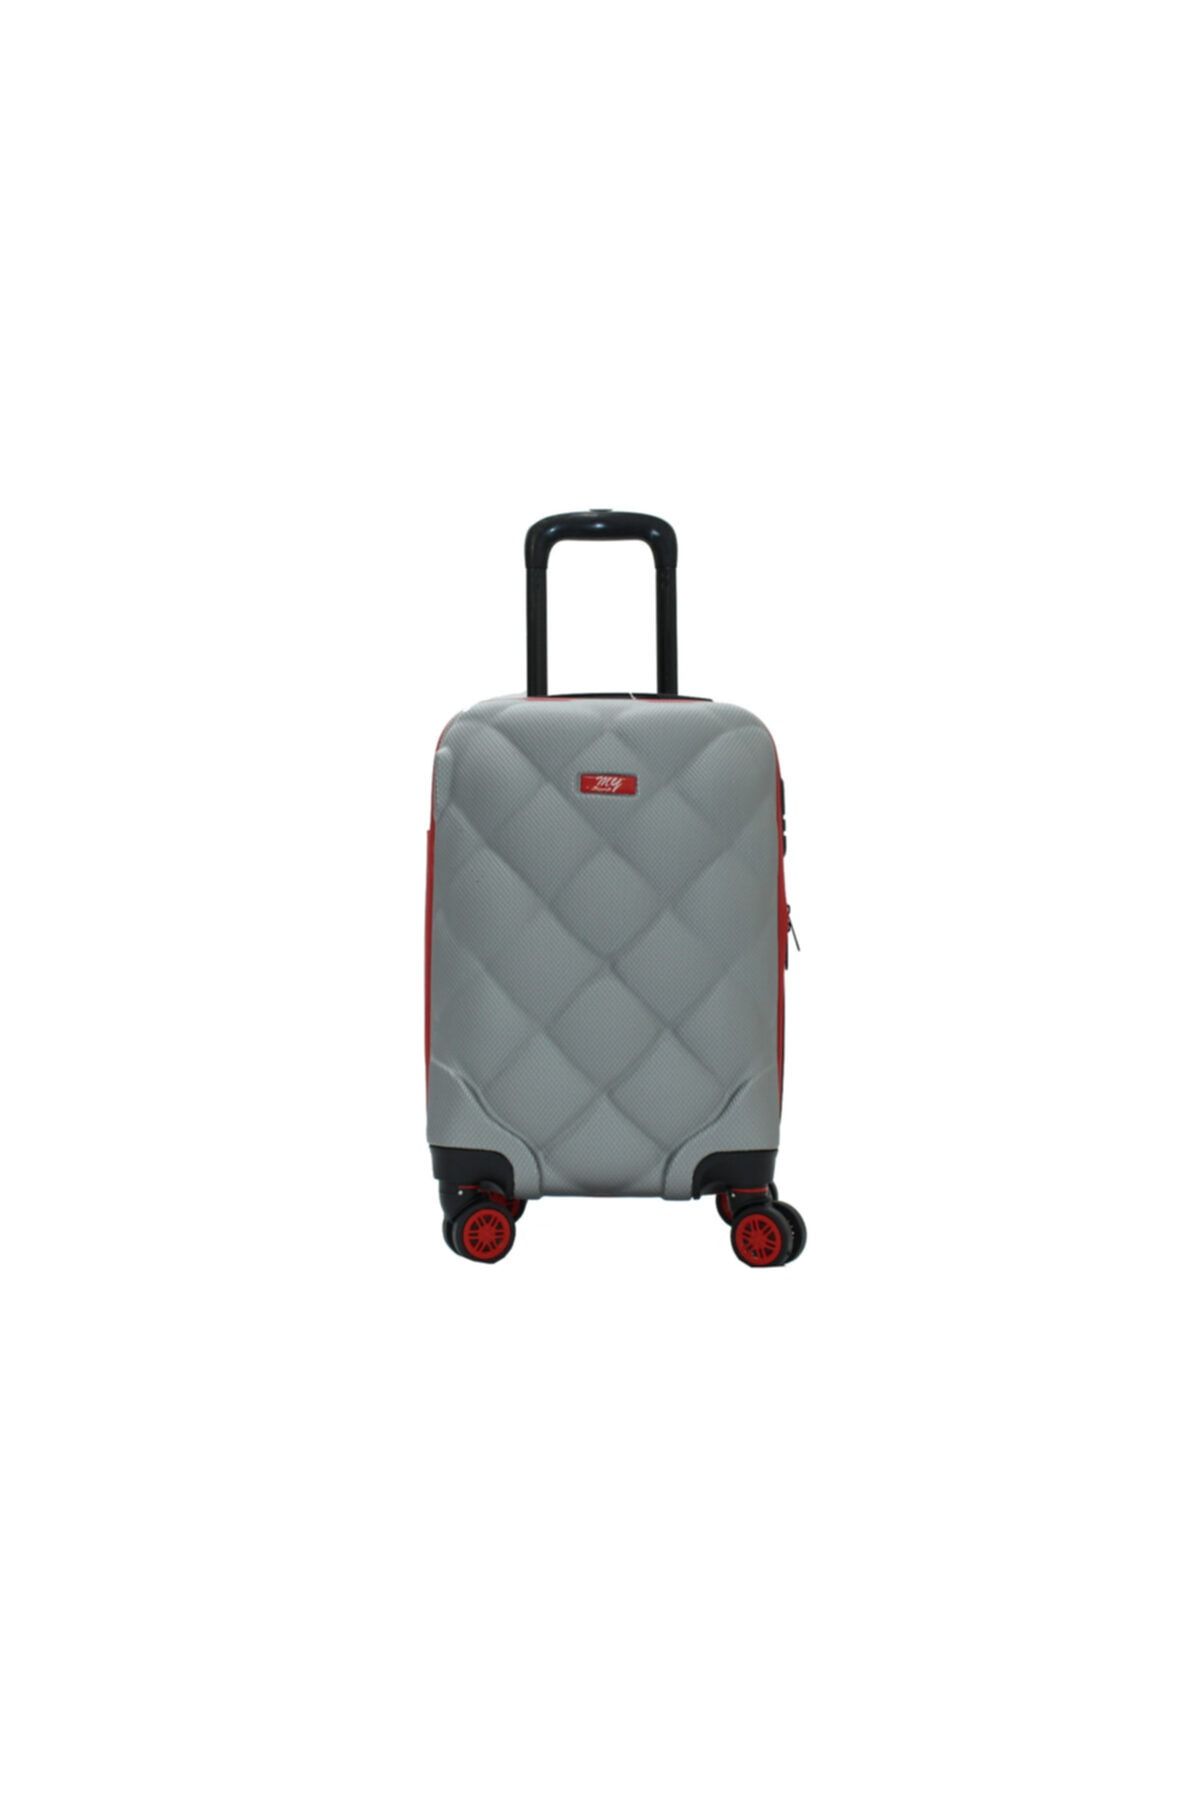 MY SARACİYE 1my010135-2 Luggage Valiz-2 Bakalit Orta Boy Valiz, Bavul